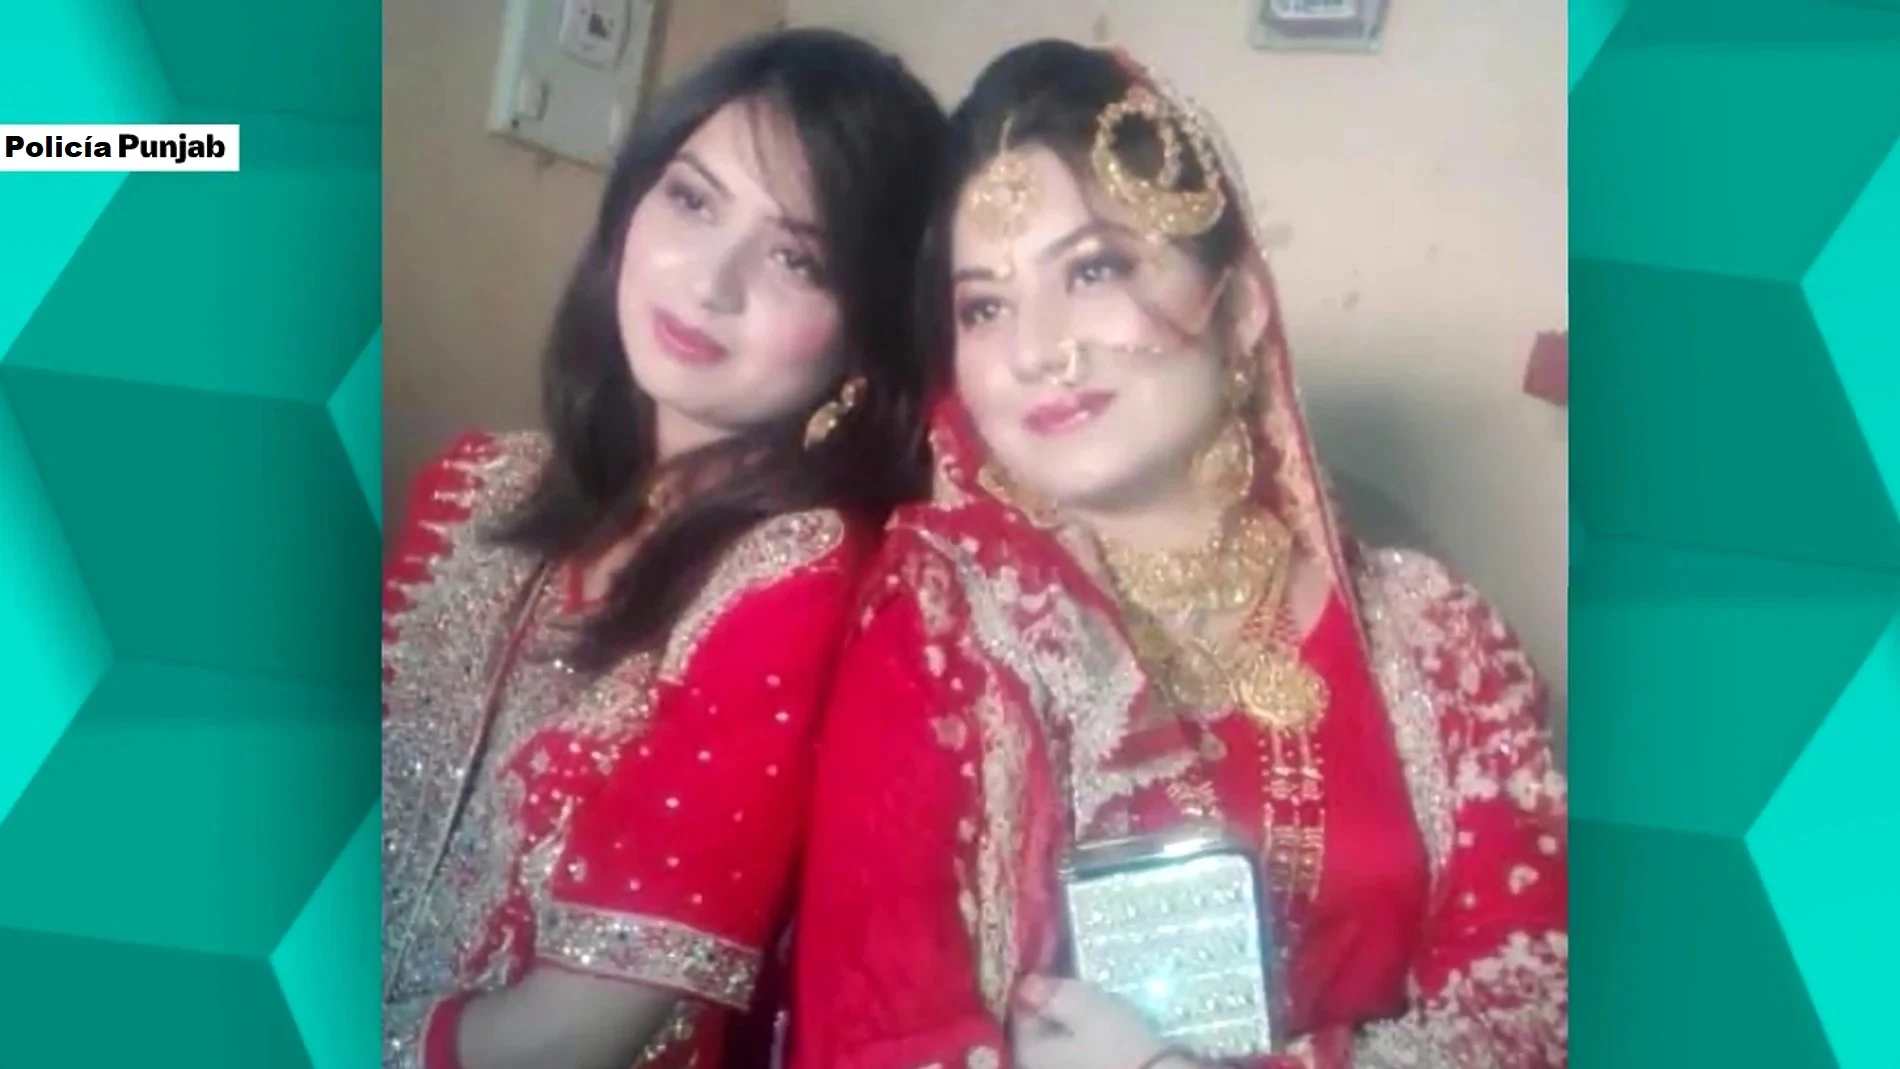 Localizan la vivienda de las hermanas asesinadas en Pakistán e identifican a sus parejas